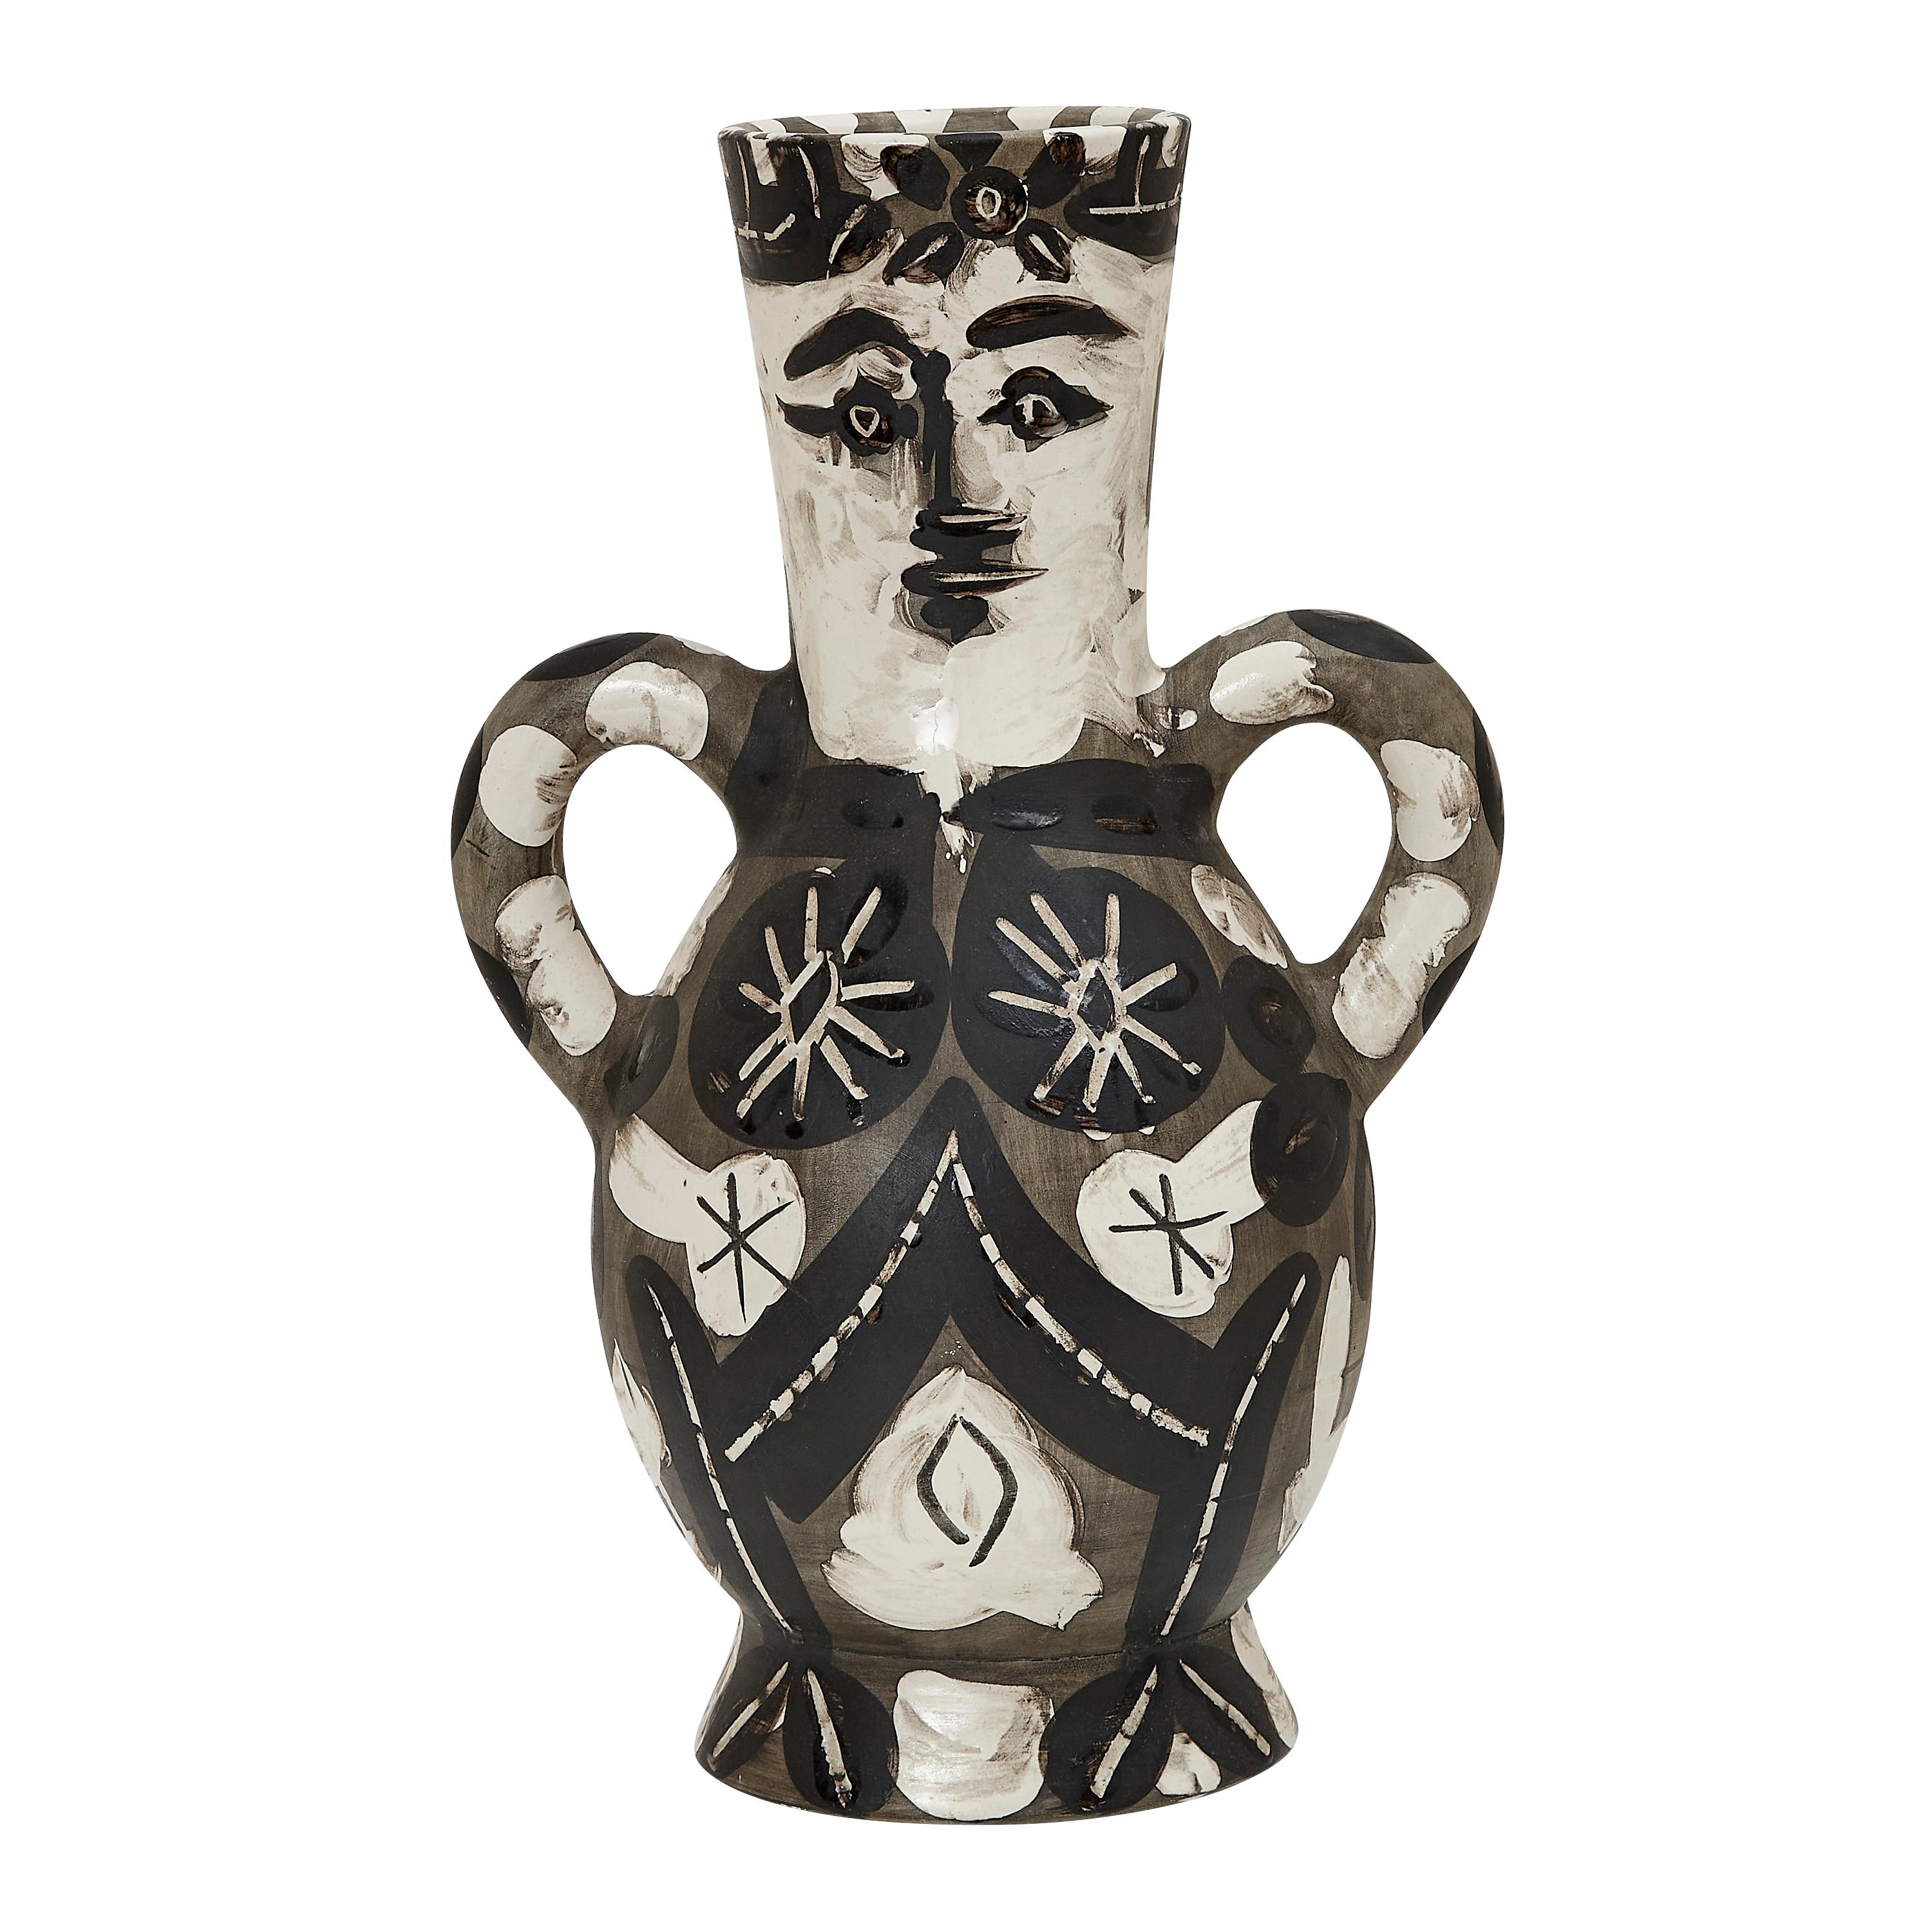 PABLO PICASSO (1881-1973) 
Vase deux anses hautes (A. R. 141)

Vase Terre de faïence, 1952, aus der Auflage von 400 Stück, teilweise glasiert und bemalt, mit den Stempeln d'Après Picasso und Madoura.